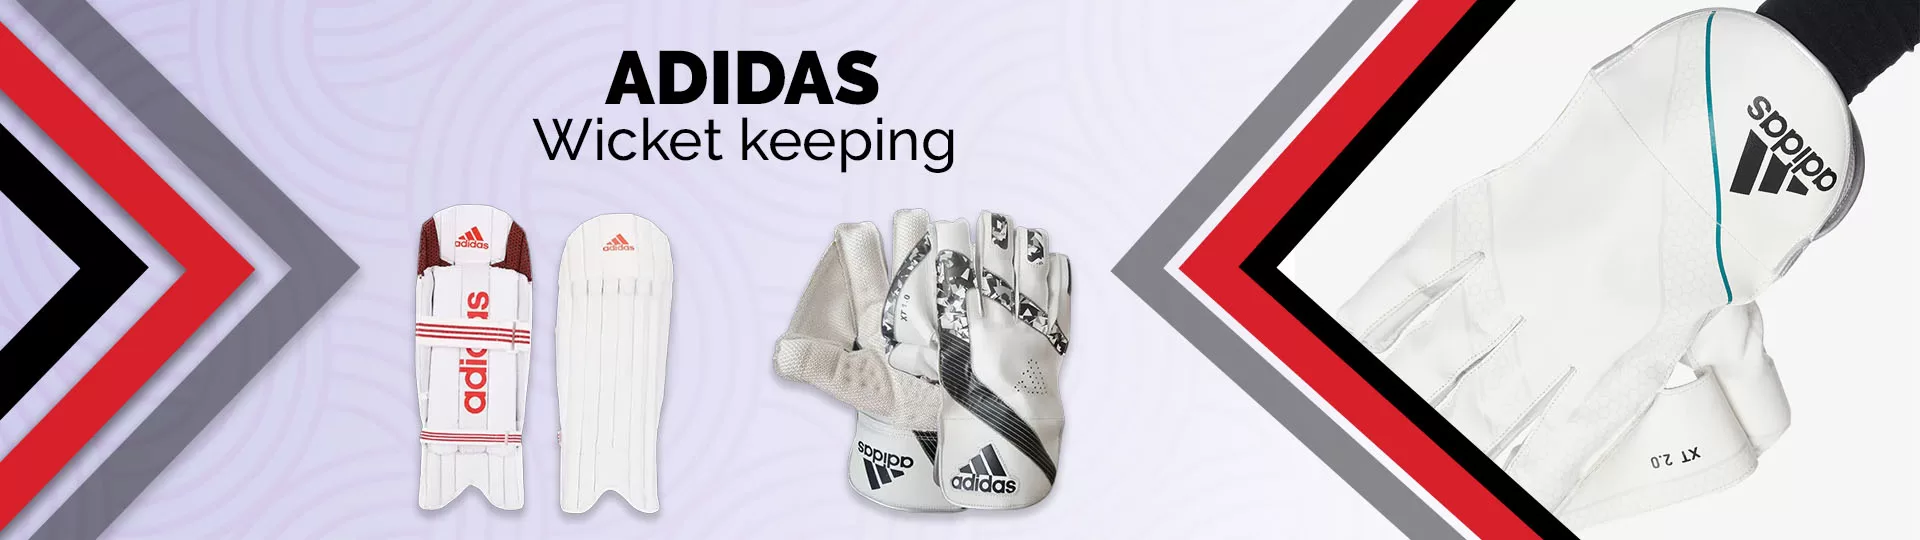 Adidas Wicket Keeping